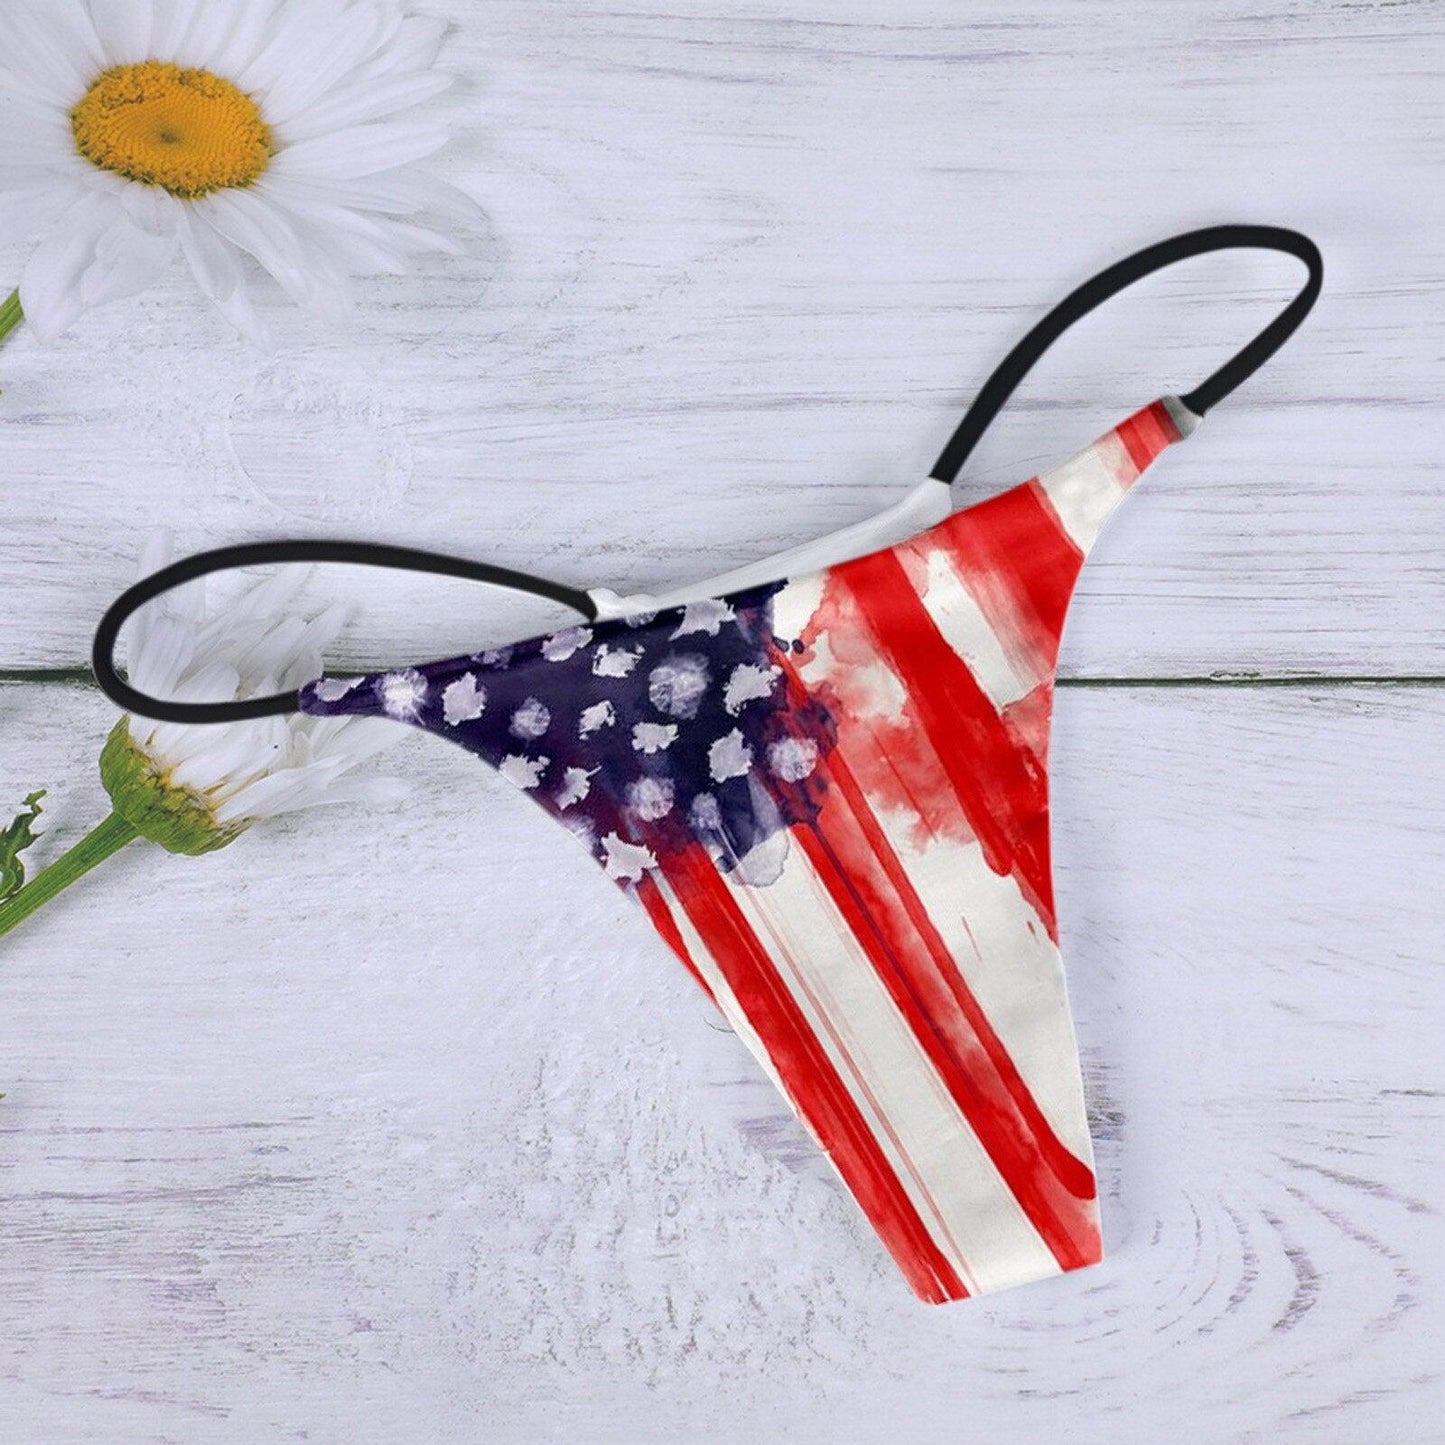 USA Flag Bikini Thong